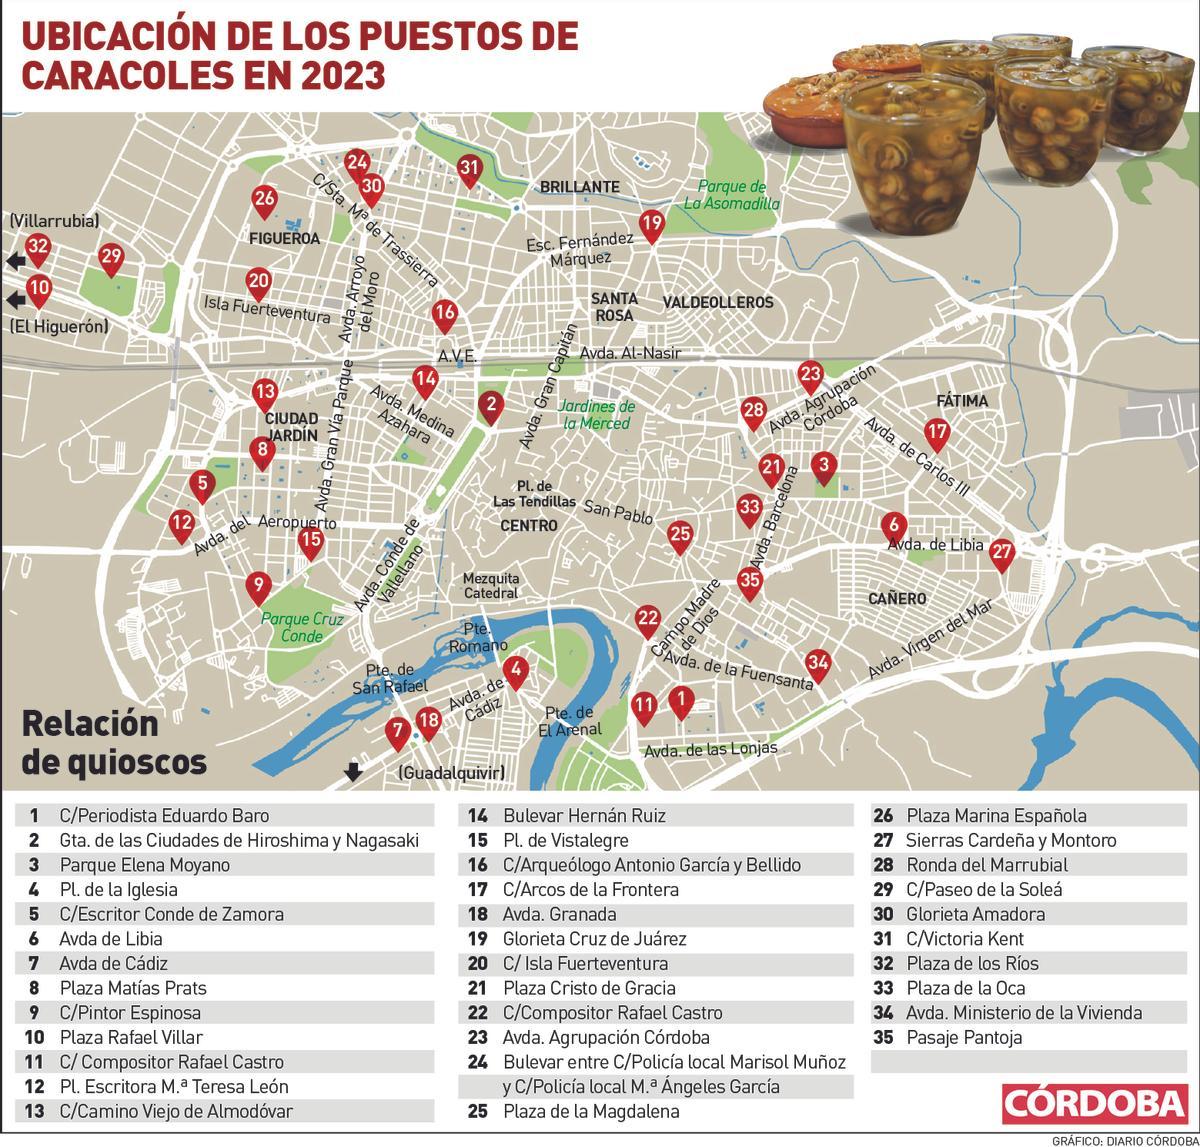 Gráfico de la ubicación de los puestos de caracoles en Córdoba en 2023.